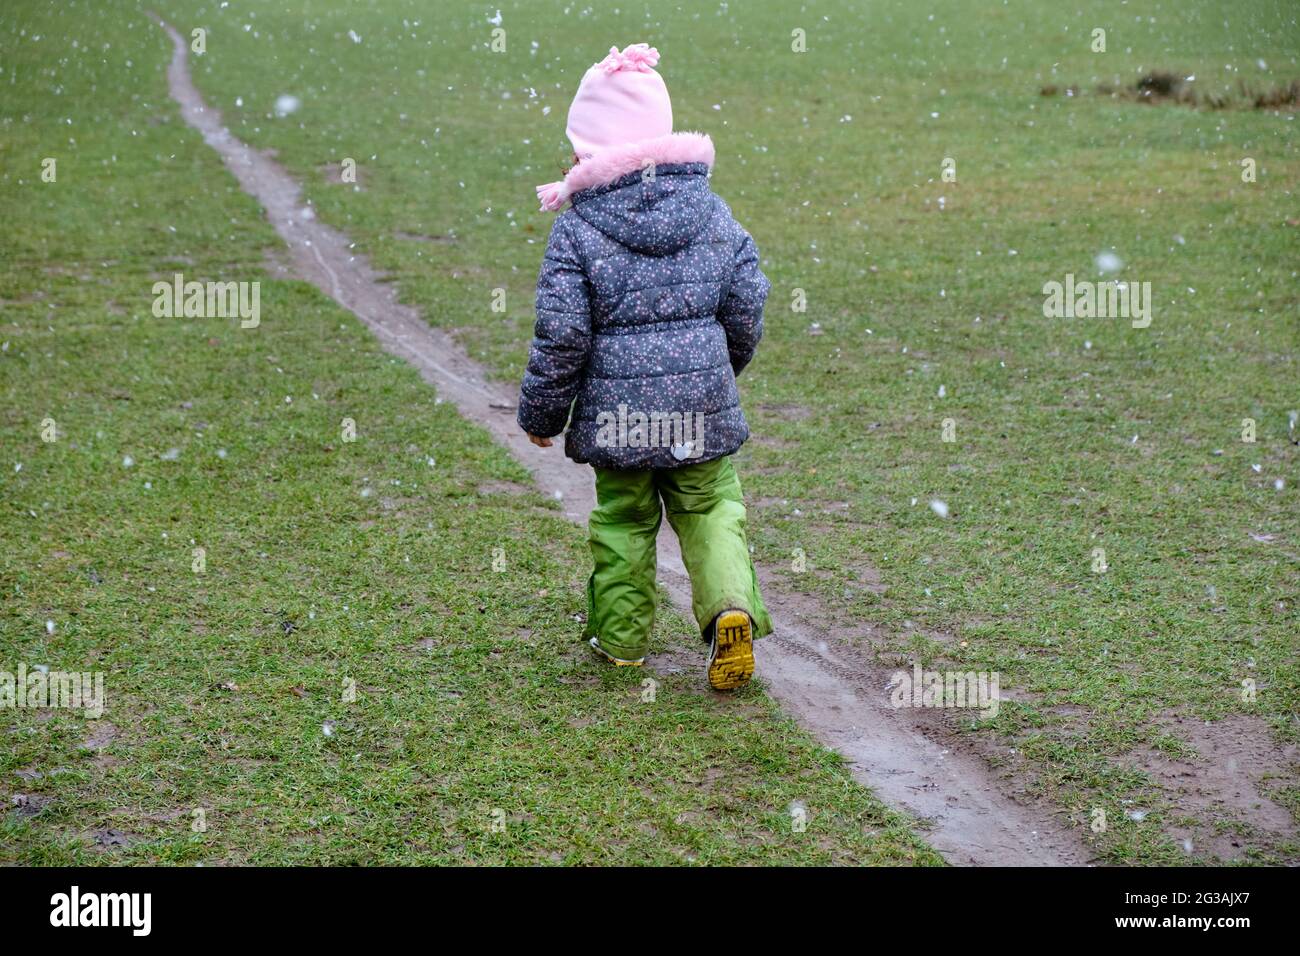 Rückansicht eines 5-jährigen Mädchens in warmer Kleidung, das im Winter während des Schneefalls auf einer Wiese auf einem schmalen, schlammigen Pfad läuft. Gesehen in Deutschland in Janua Stockfoto